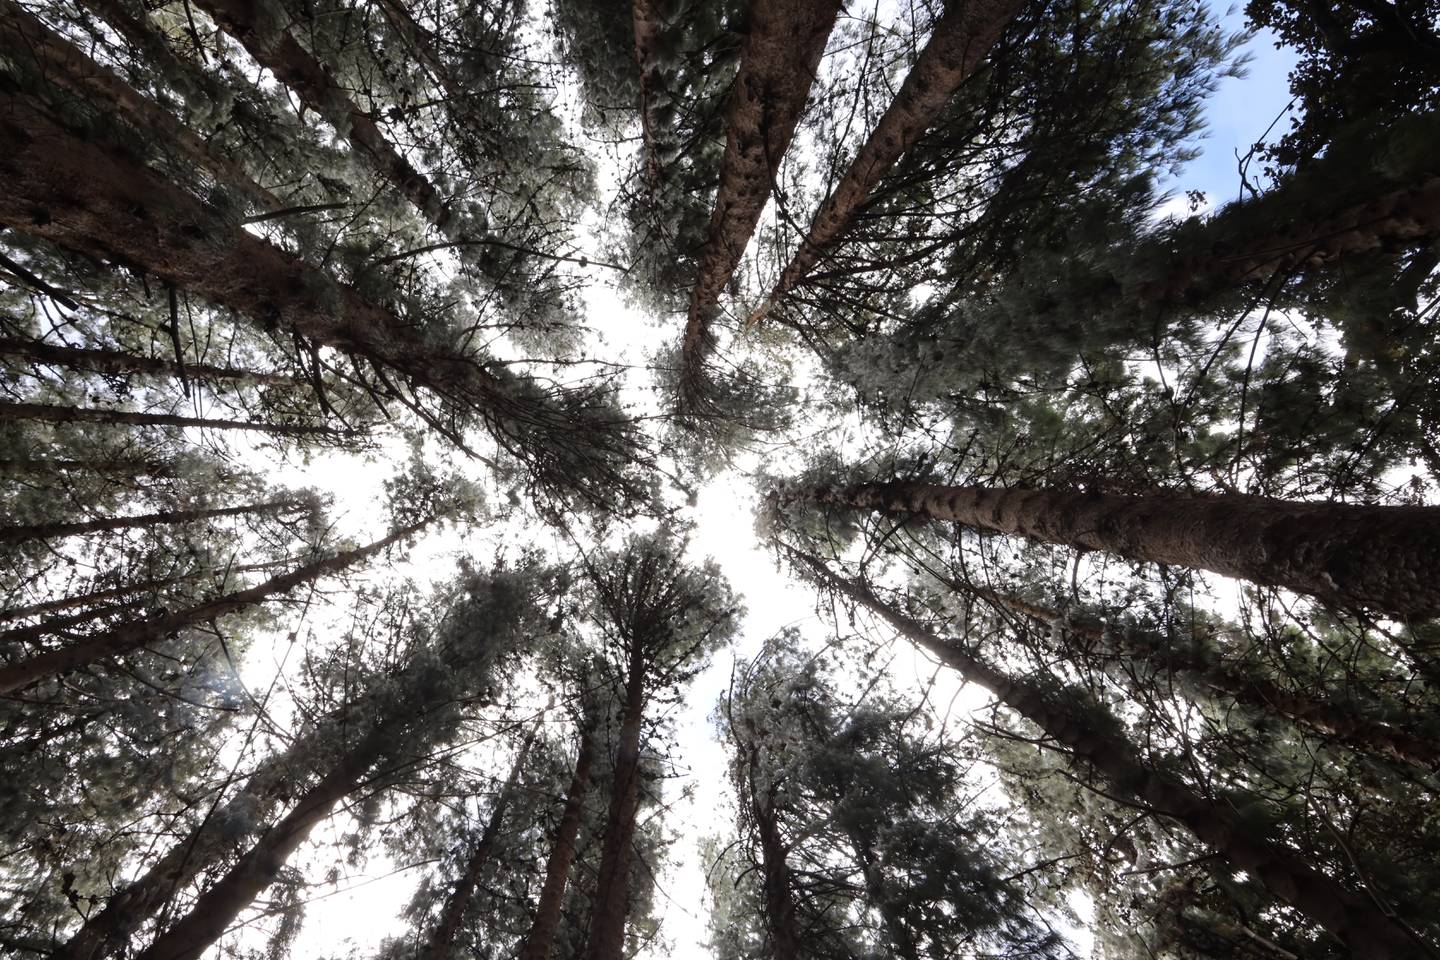 Cresta de los pinos del bosque en Prusia que pertenece al Parque Nacional Volcán Irazú. Árboles enormes que permiten una vista preciosa.